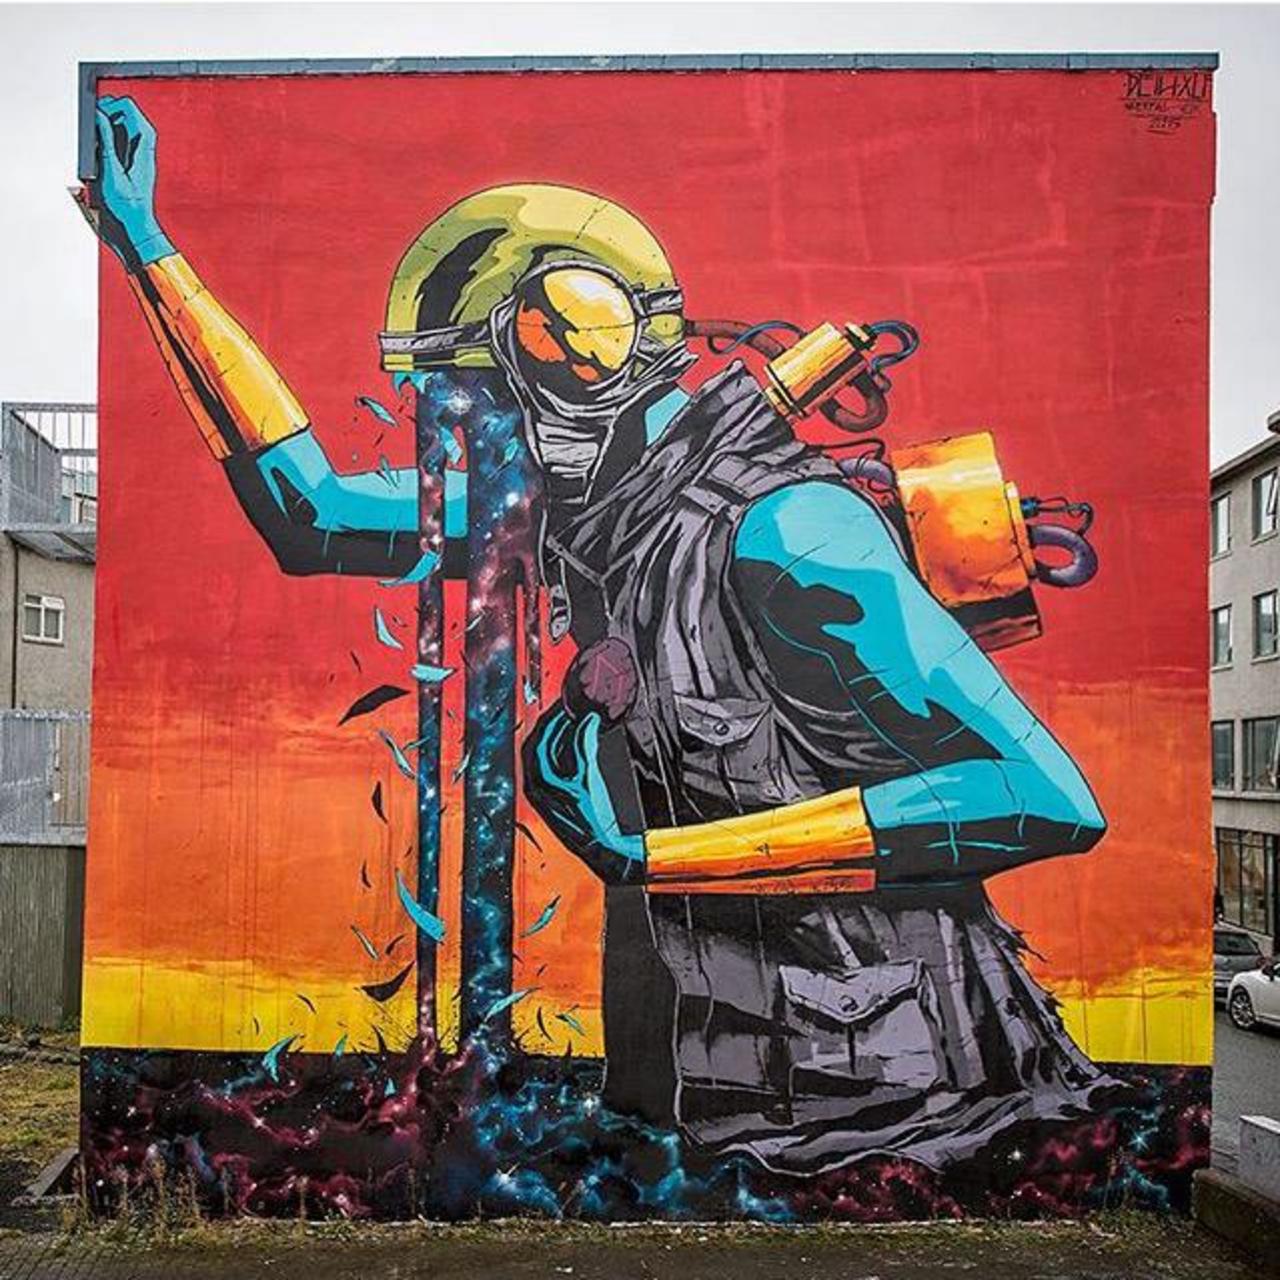 Street Art by Deih in Reykjavik 

#art #graffiti #mural #streetart https://t.co/9gHCzvrpfz